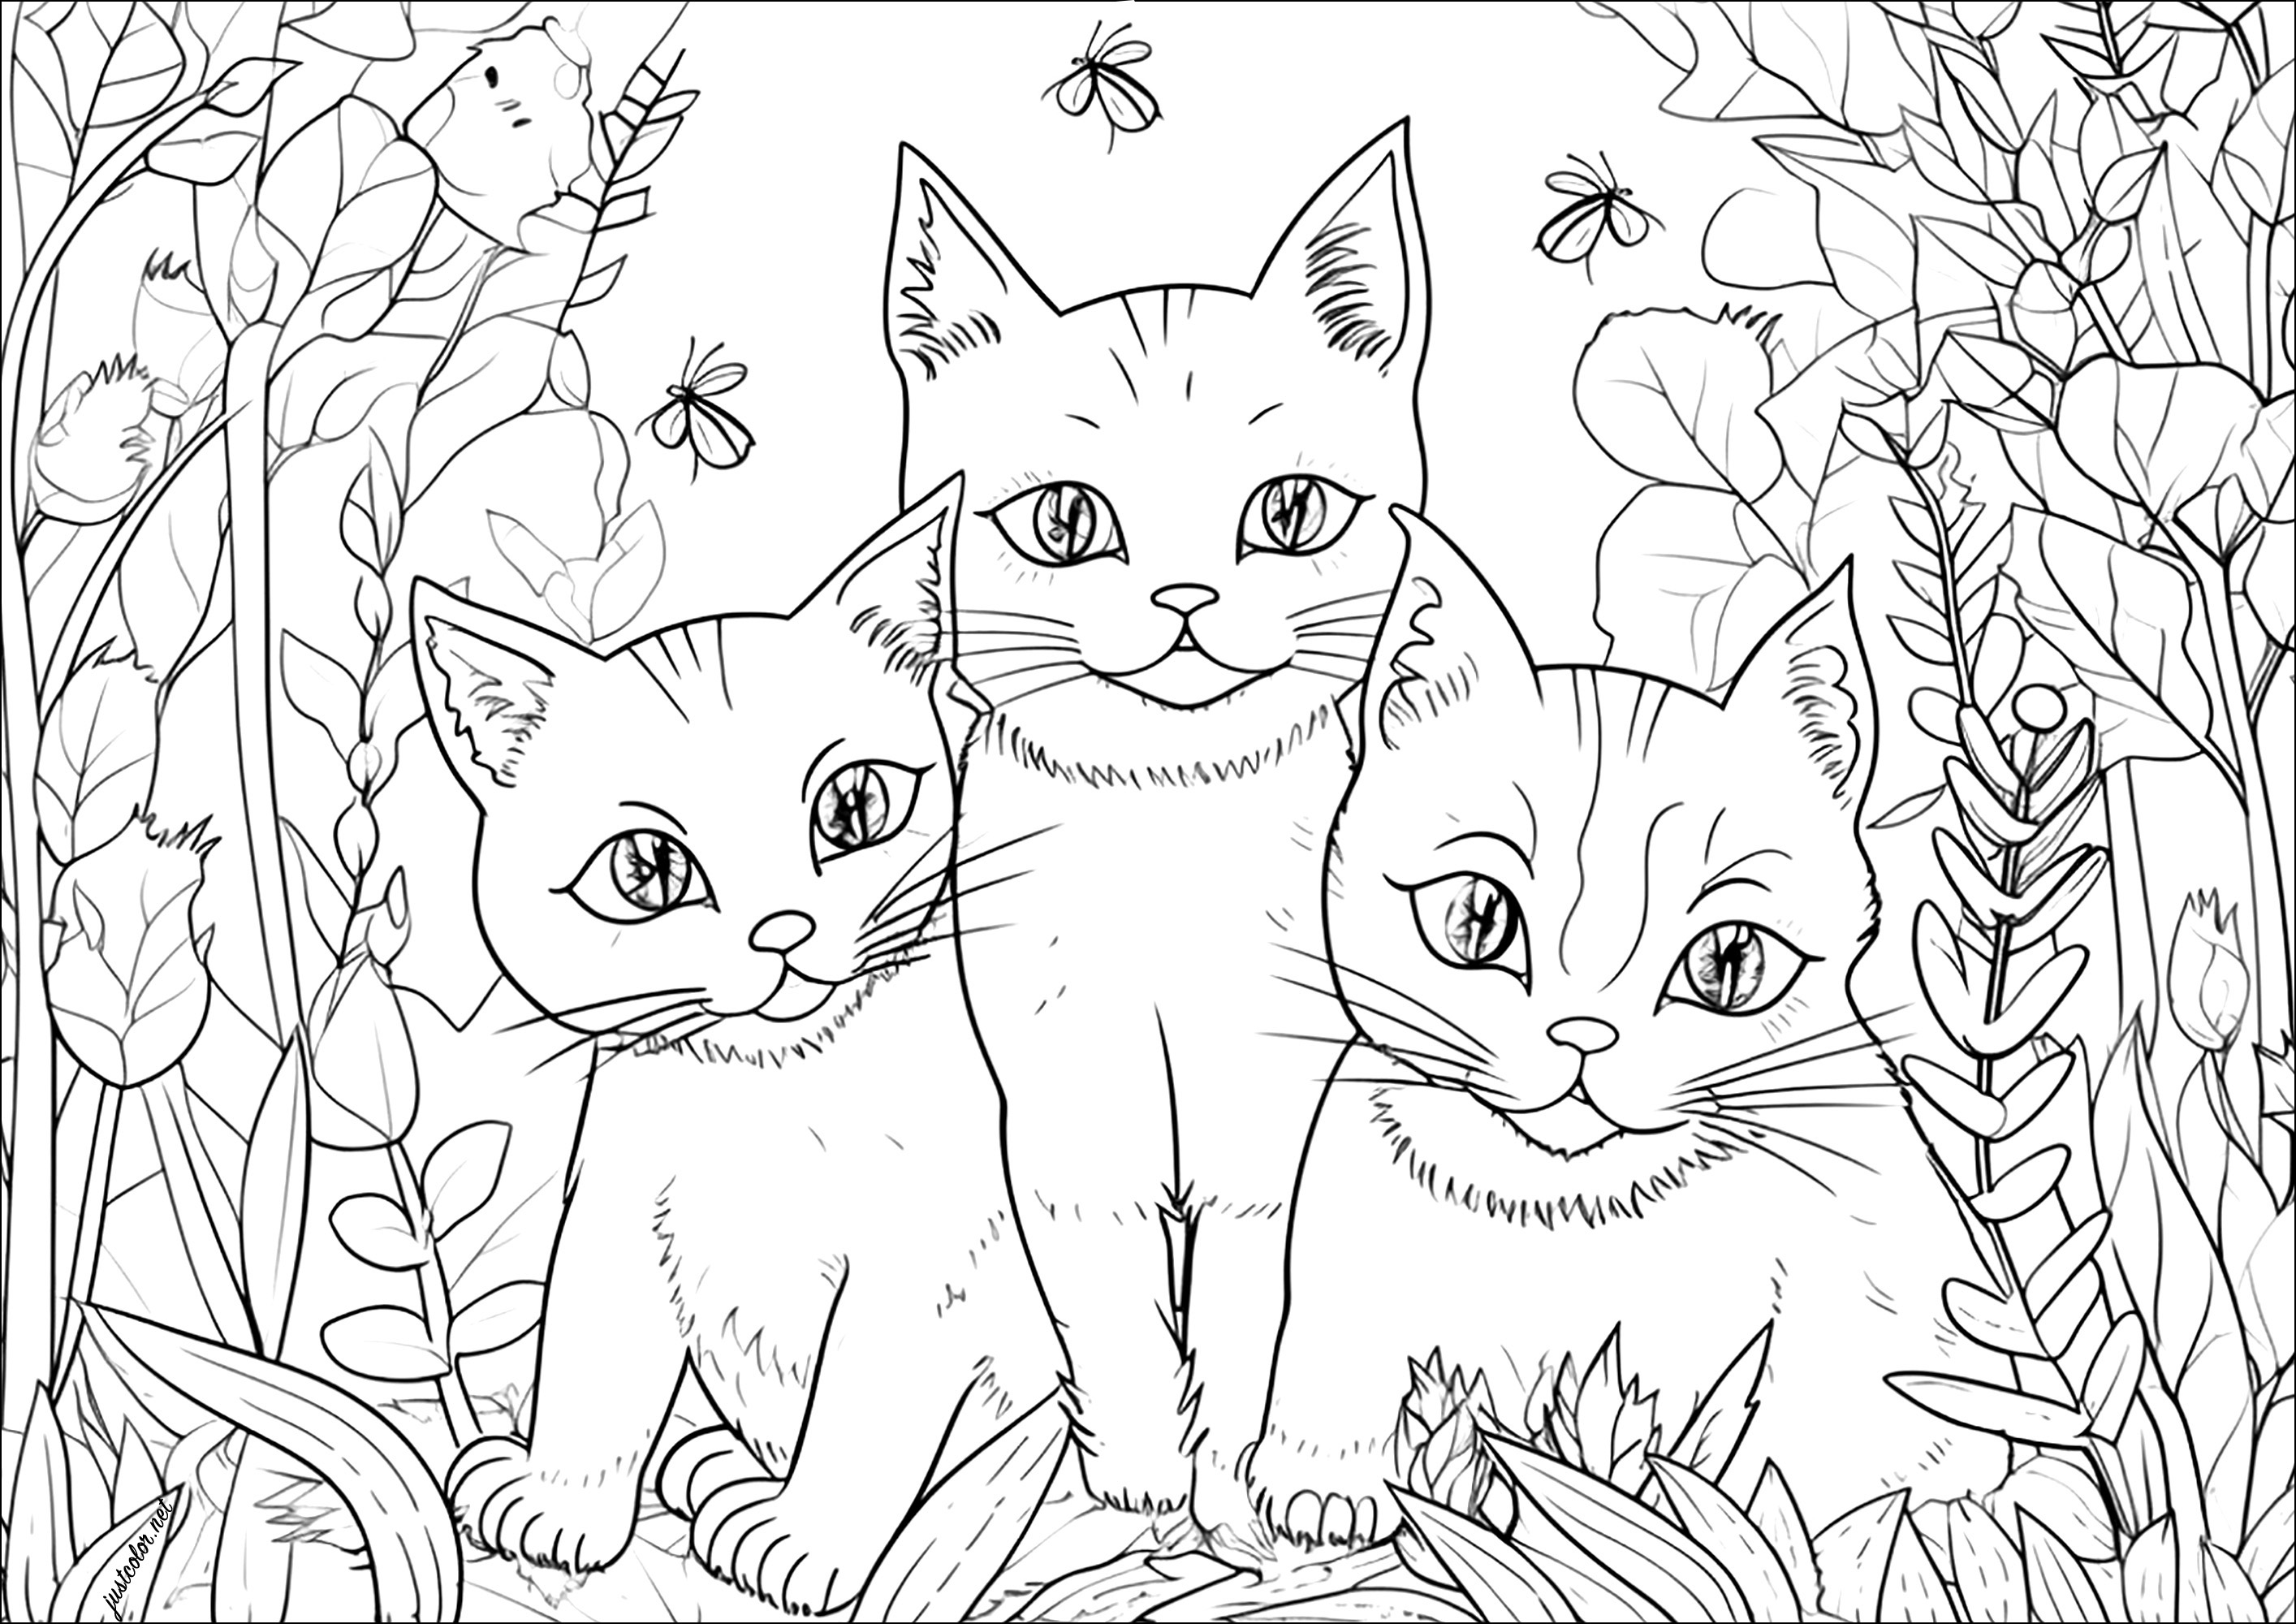 Tre bei gatti in giardino. In un grazioso giardino, alcuni insetti circondano questi tre bellissimi gatti, disegnati con uno stile molto realistico.